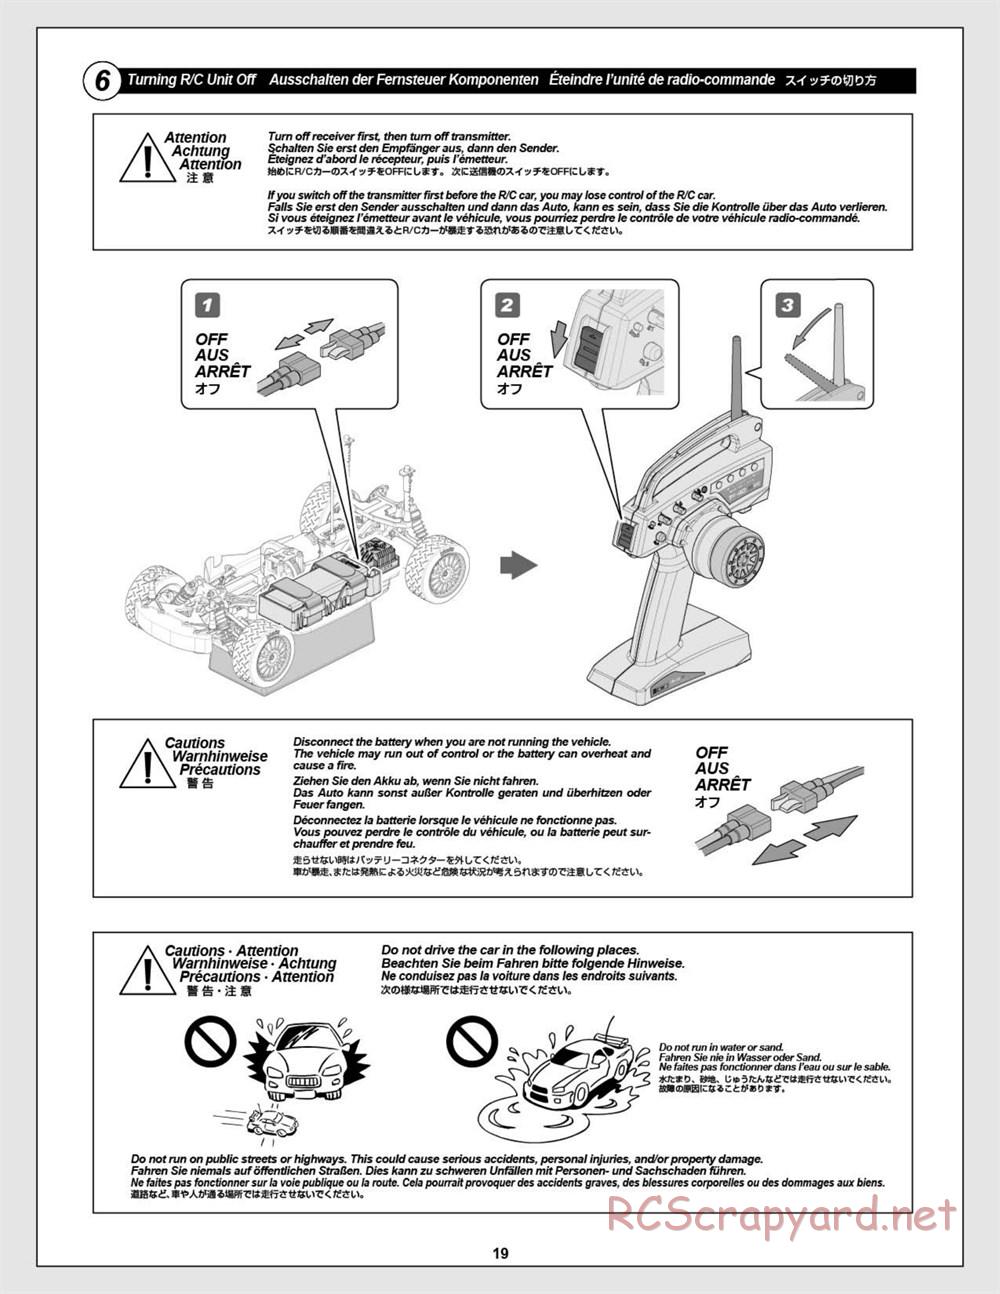 HPI - WR8 Flux - Manual - Page 19